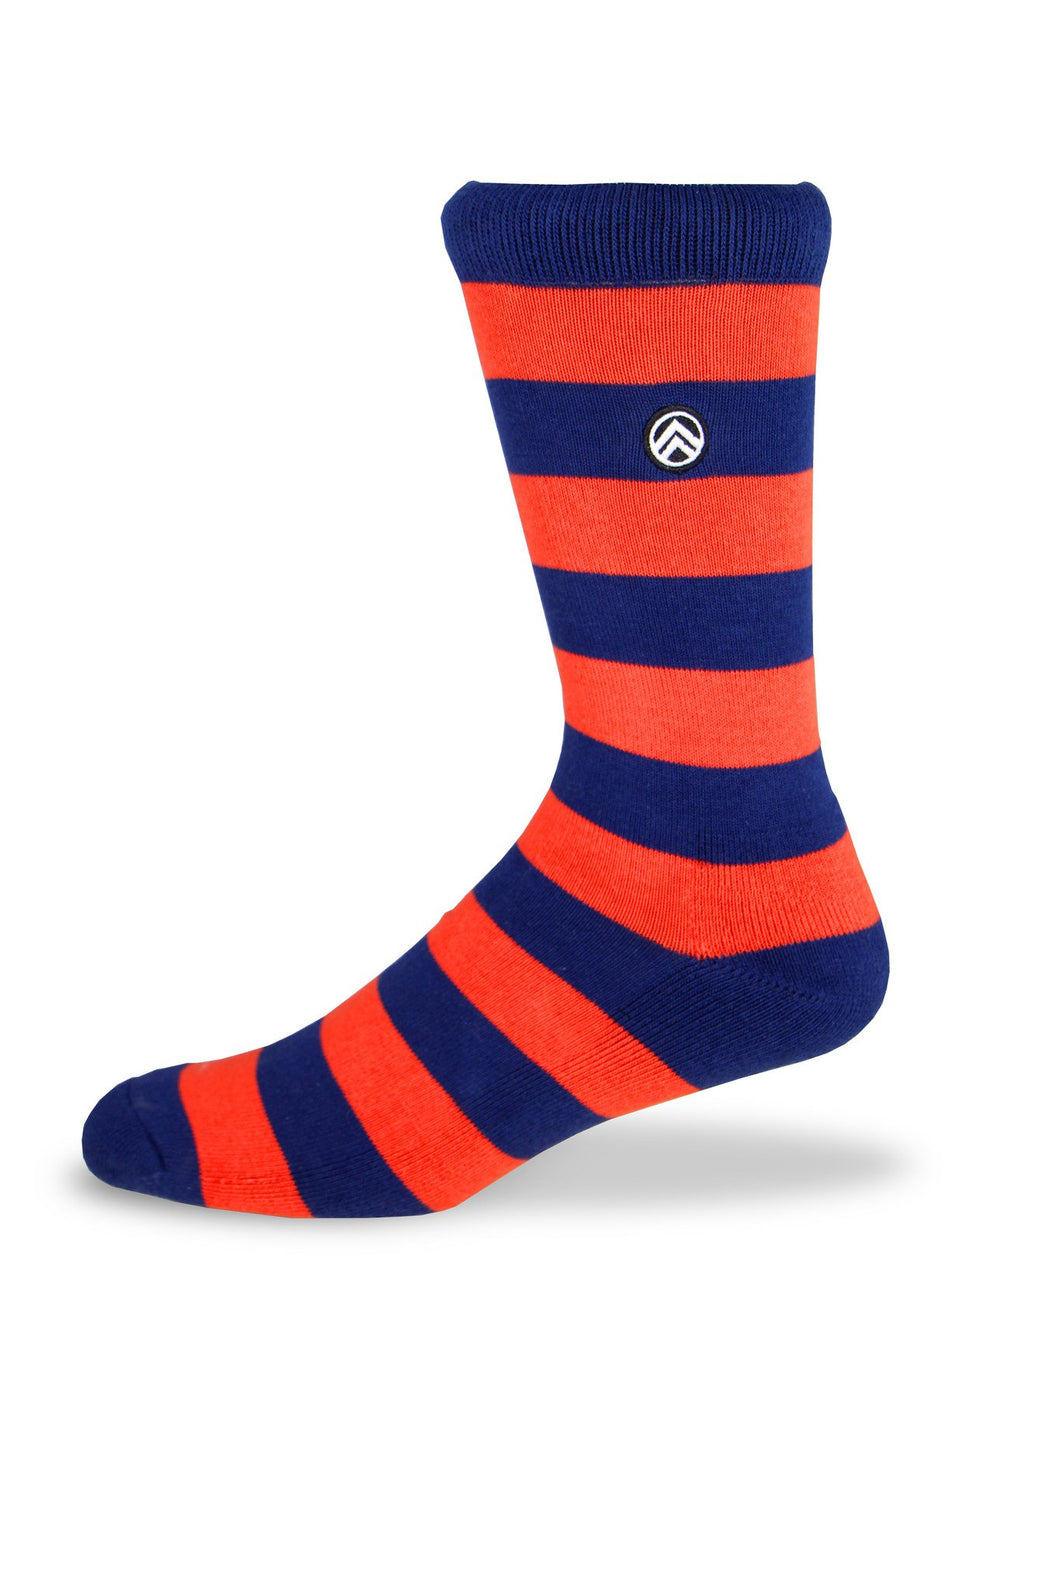 Sky Footwear Socks, Orange/Blue Rugby